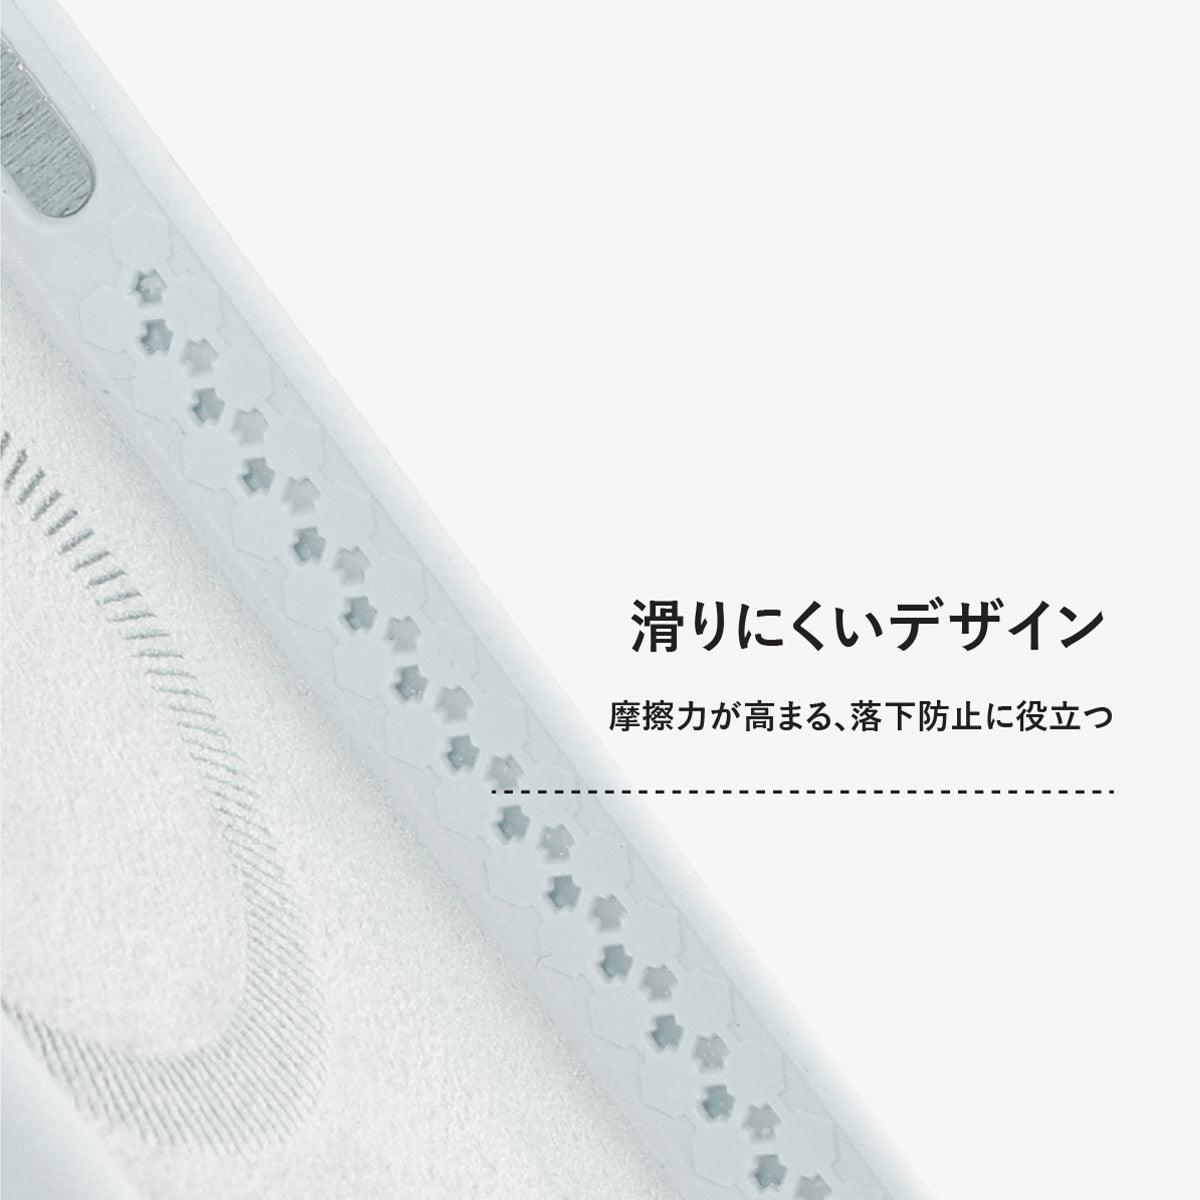 iPhone 12 Pro ピンク シリコン スマホケース MagSafe対応 - CORECOLOUR